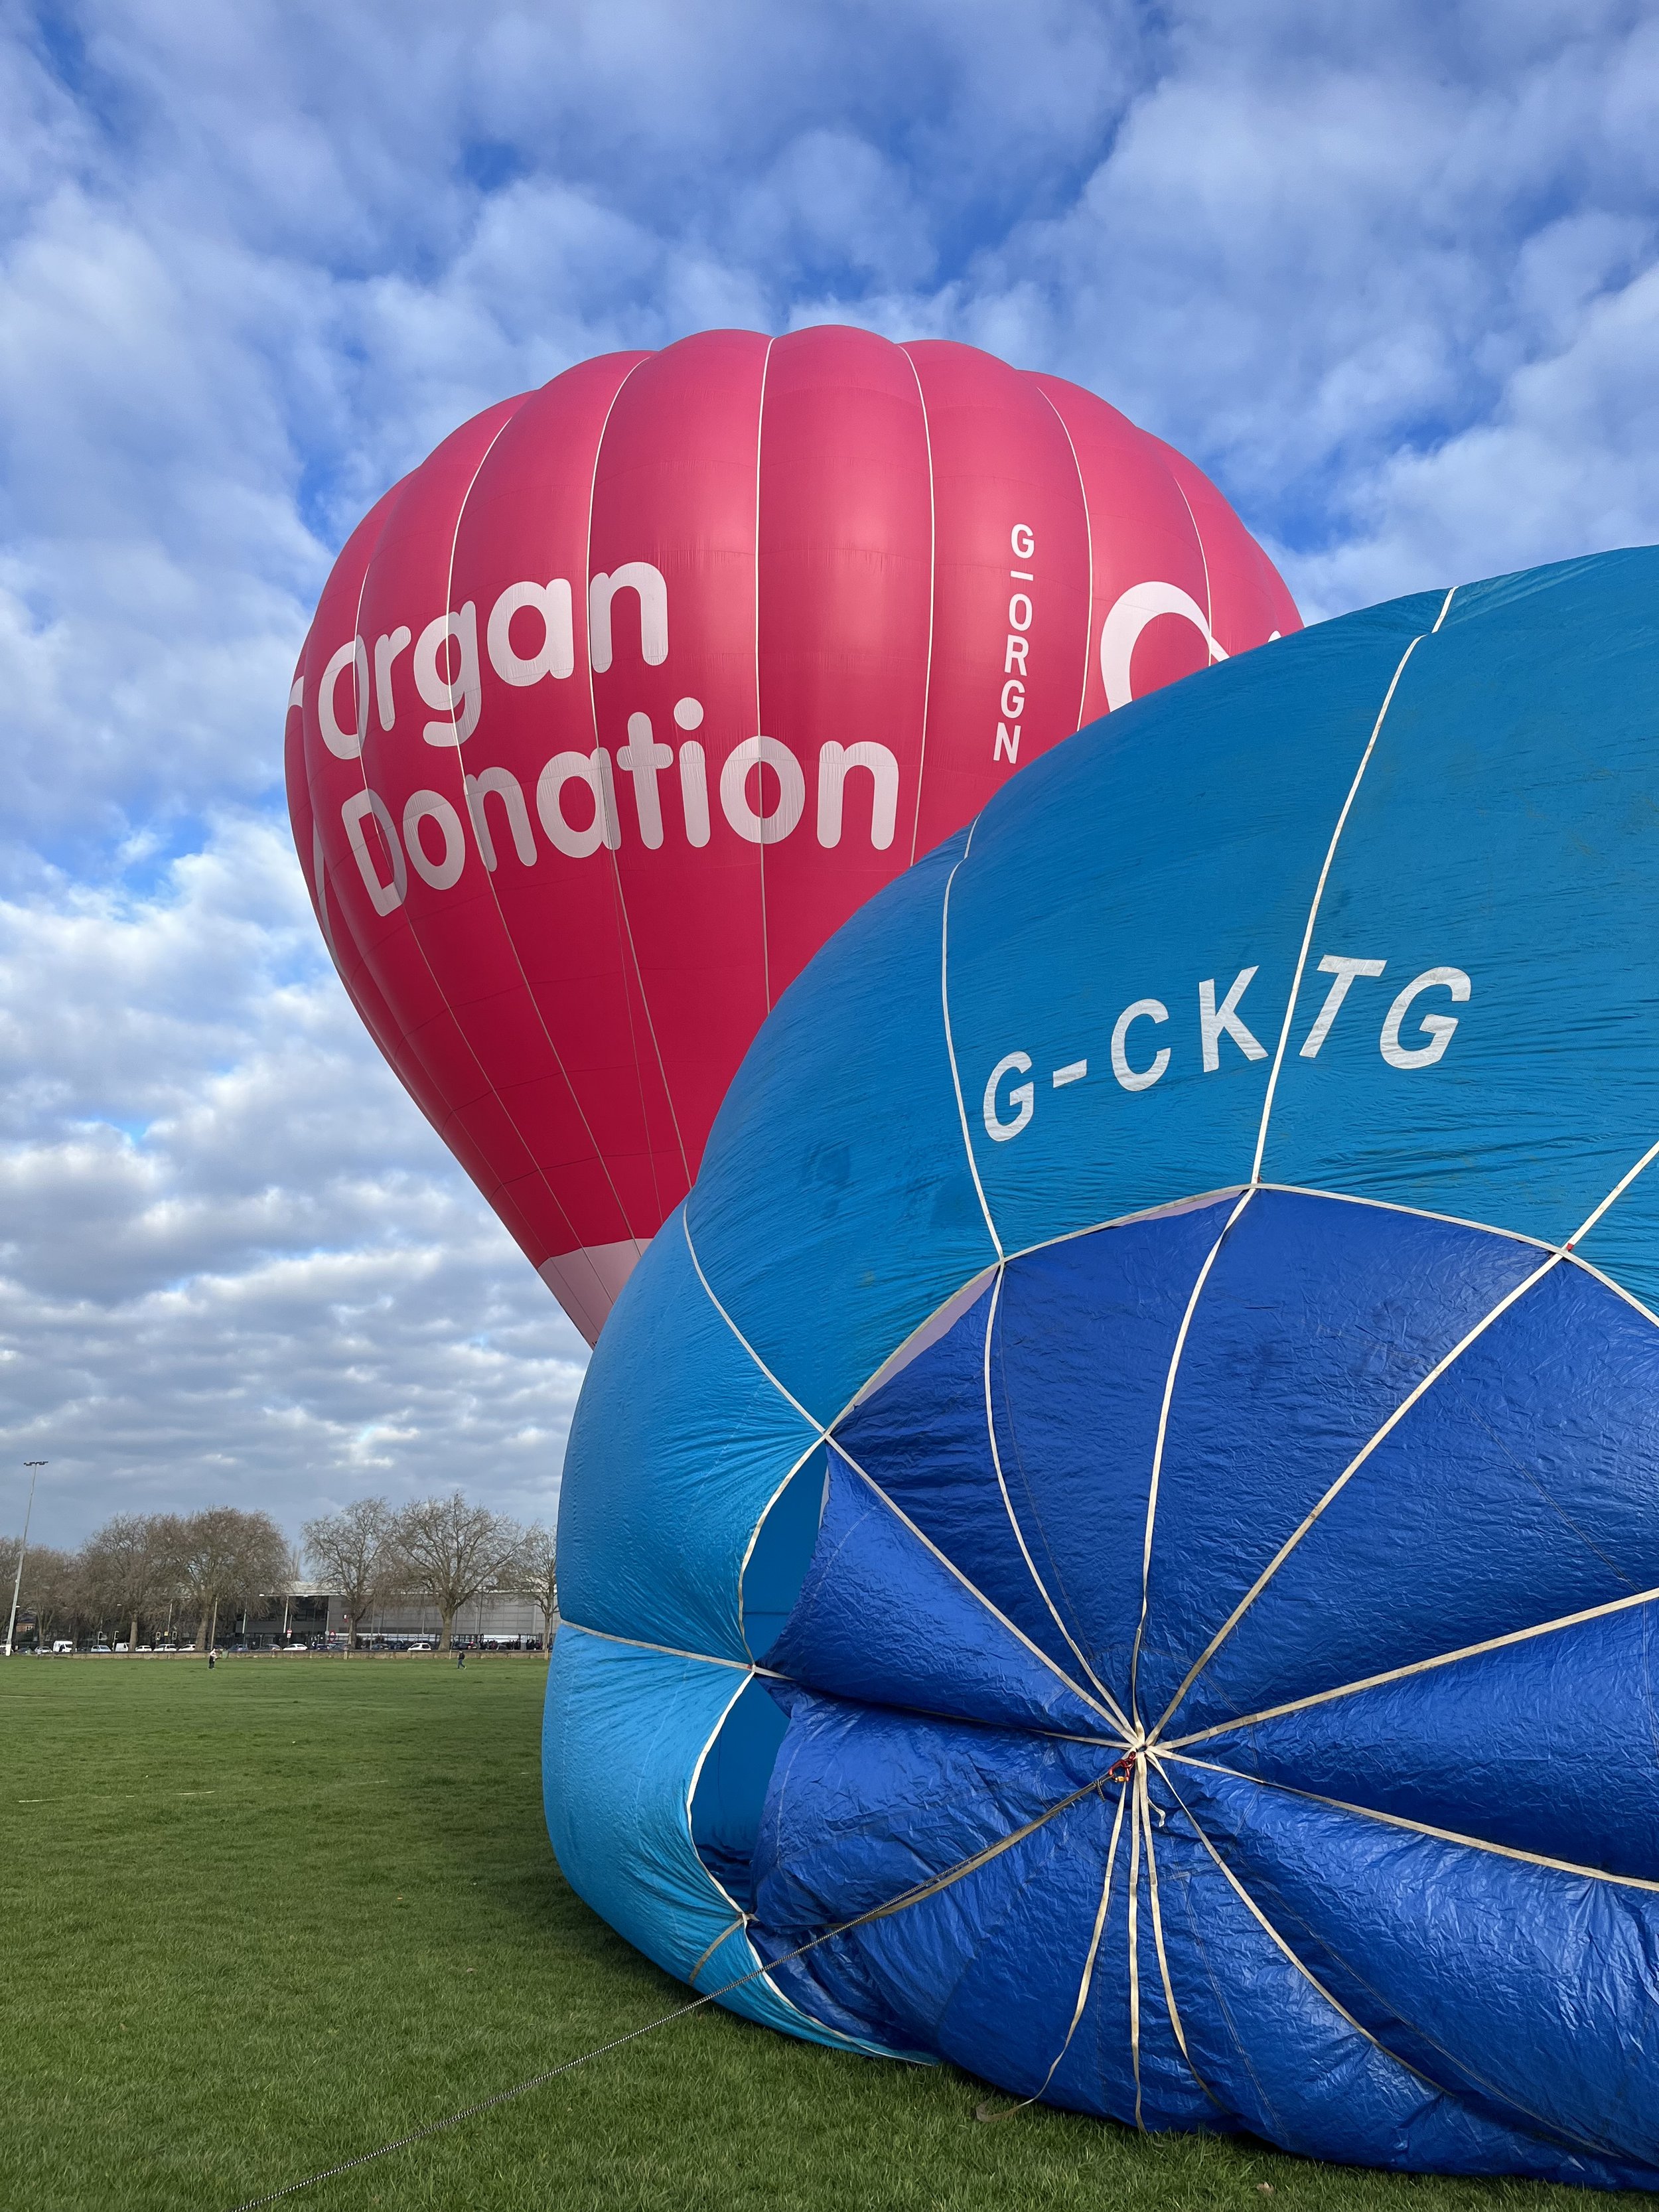 Organ Donation Hot air balloon